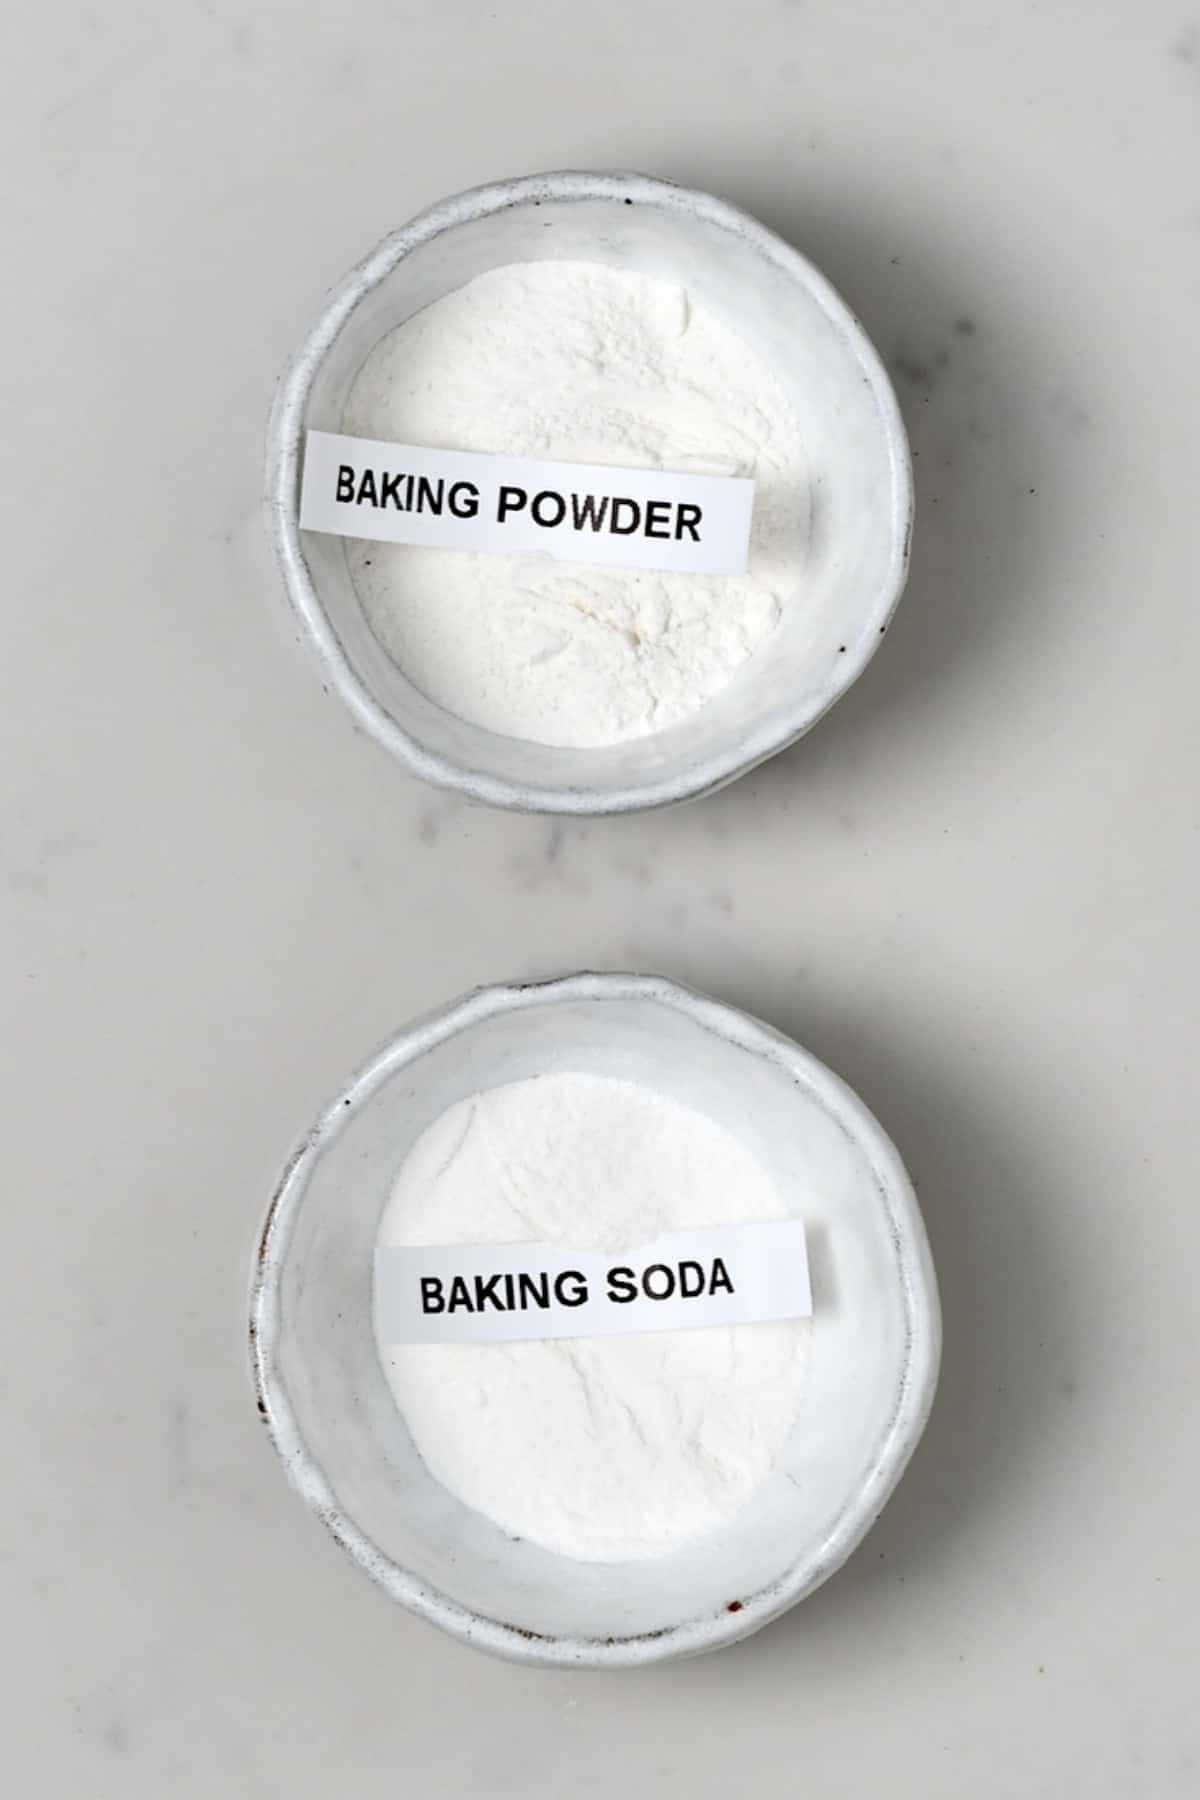 Baking powder and baking soda